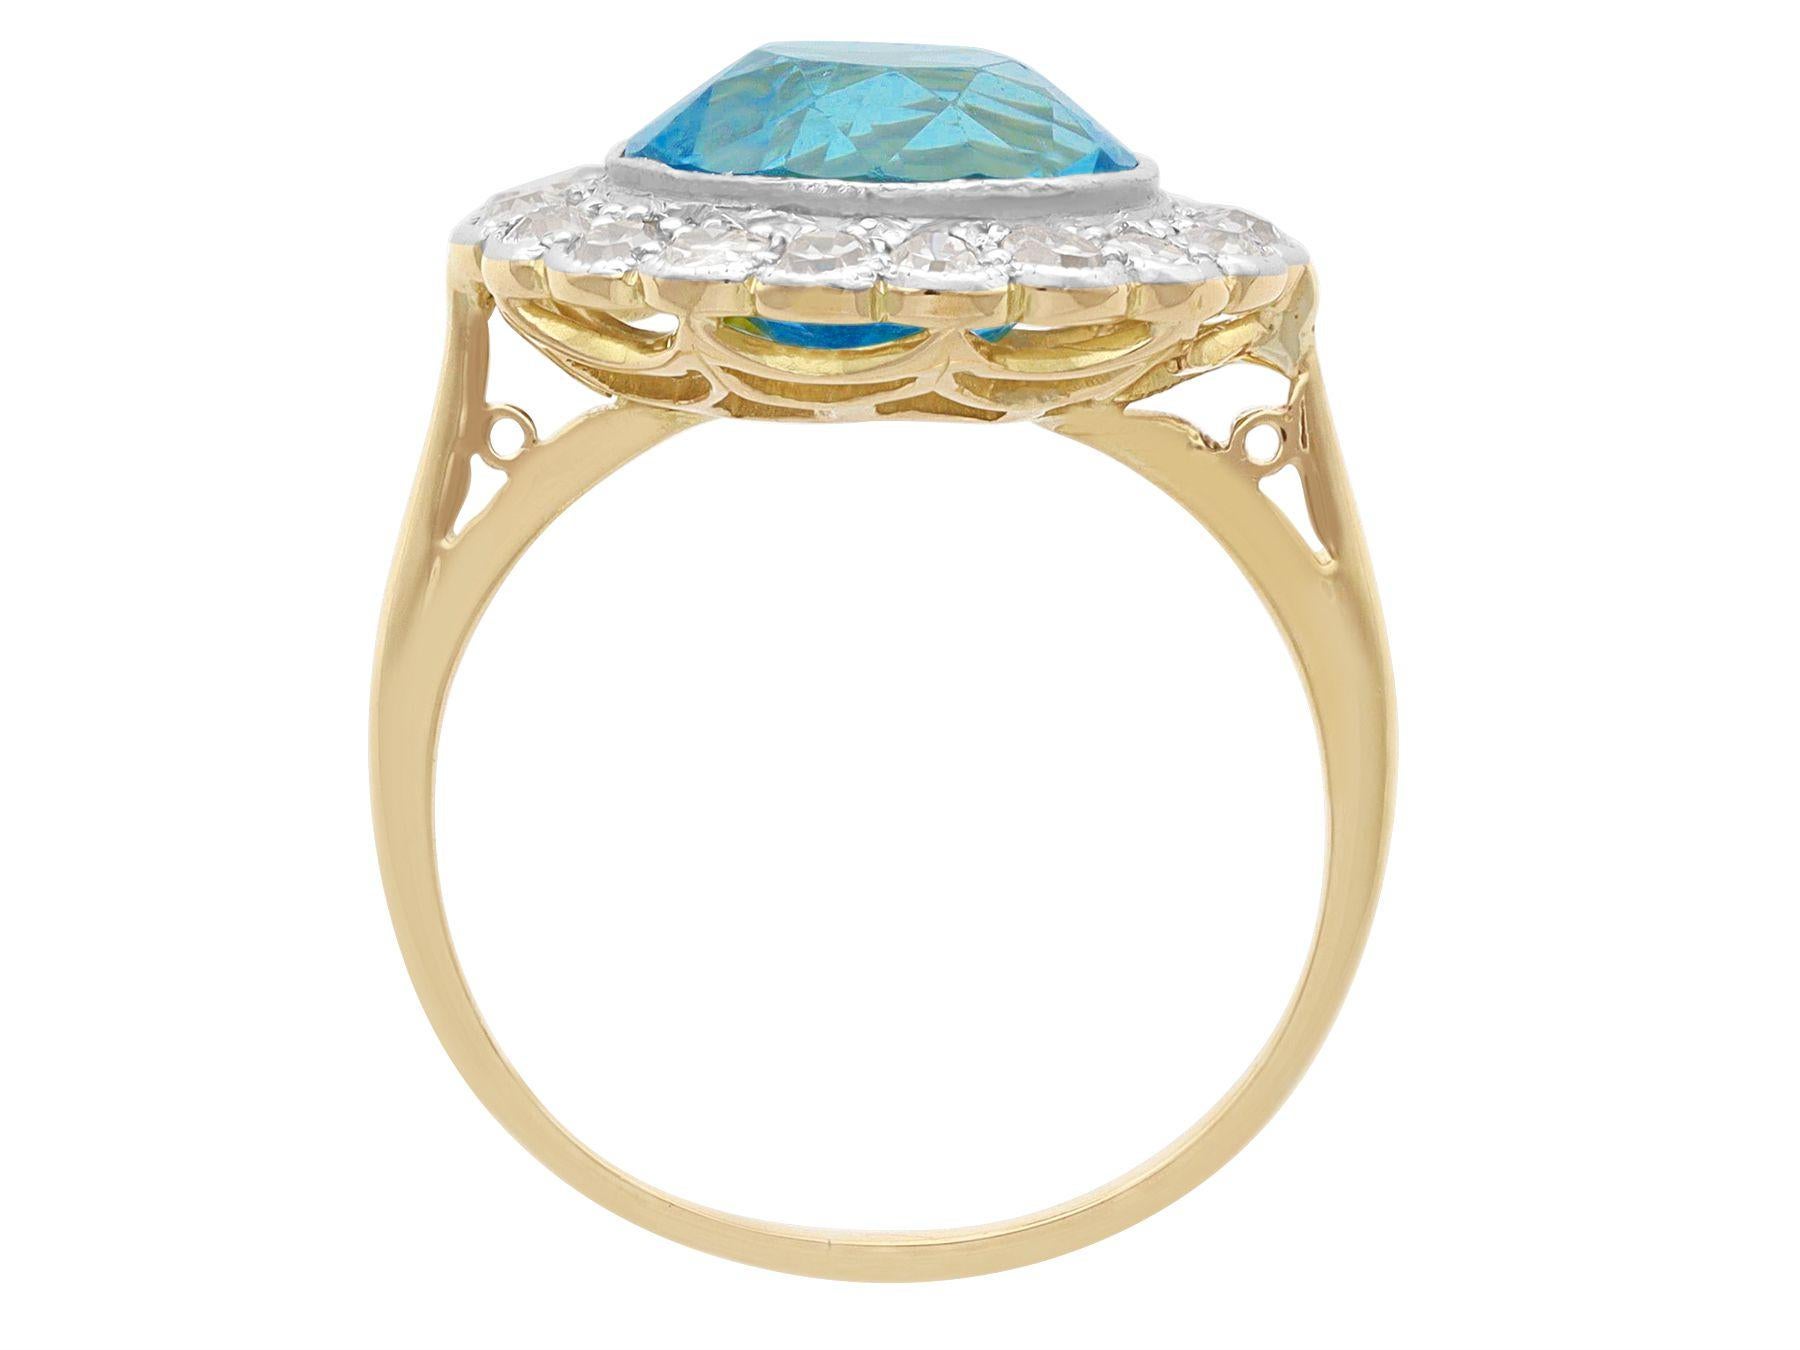 2 carat aquamarine ring